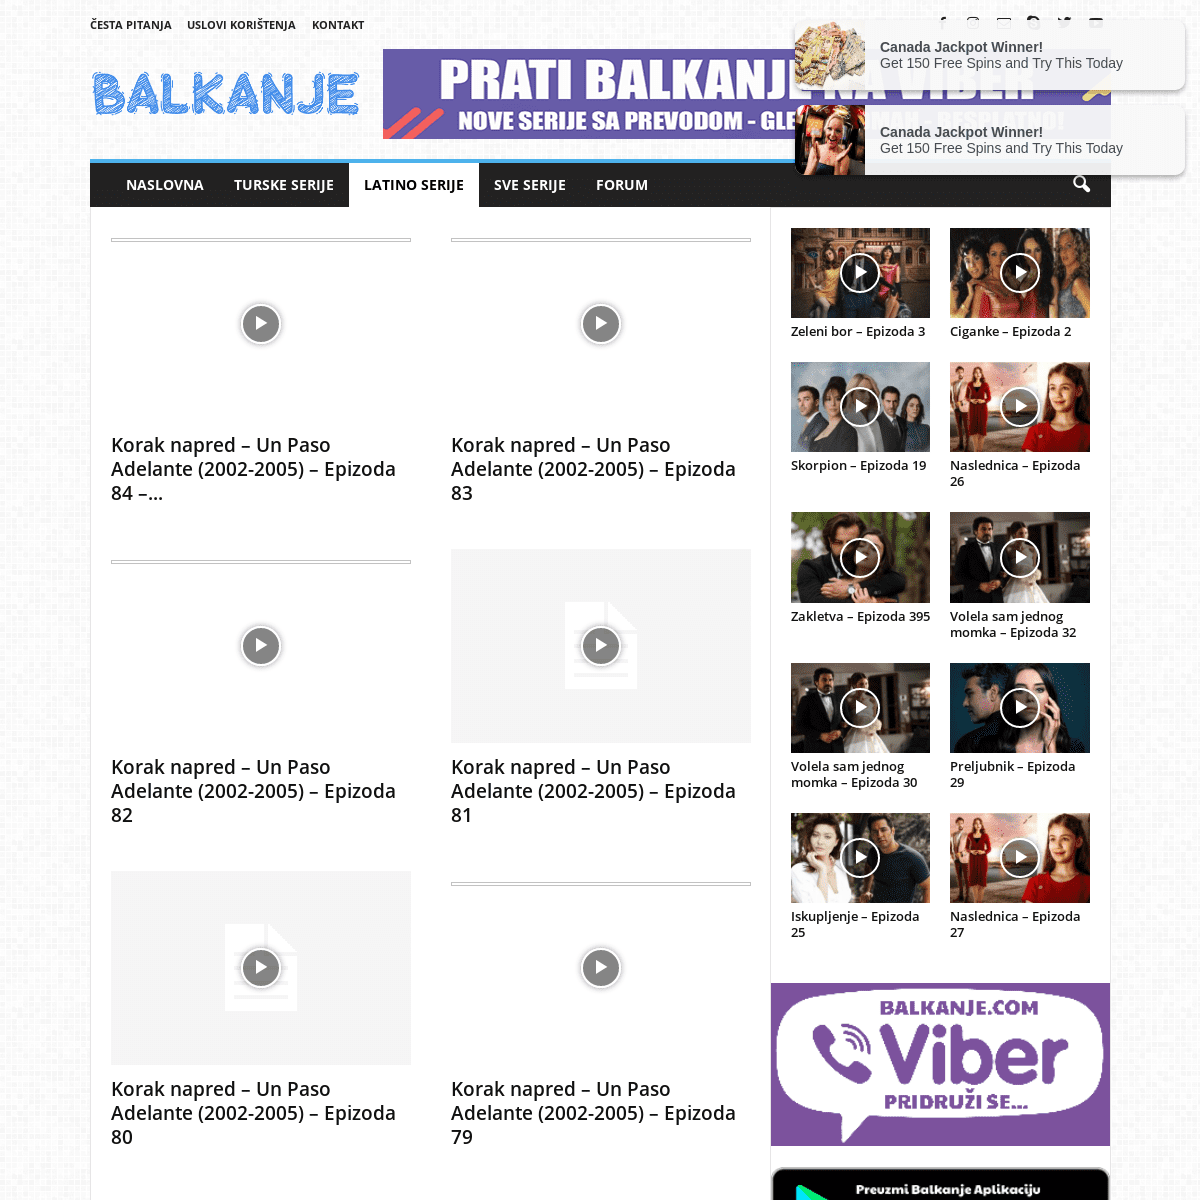 A complete backup of https://balkanje.com/latino-serije/korak-napred-2002-2005/